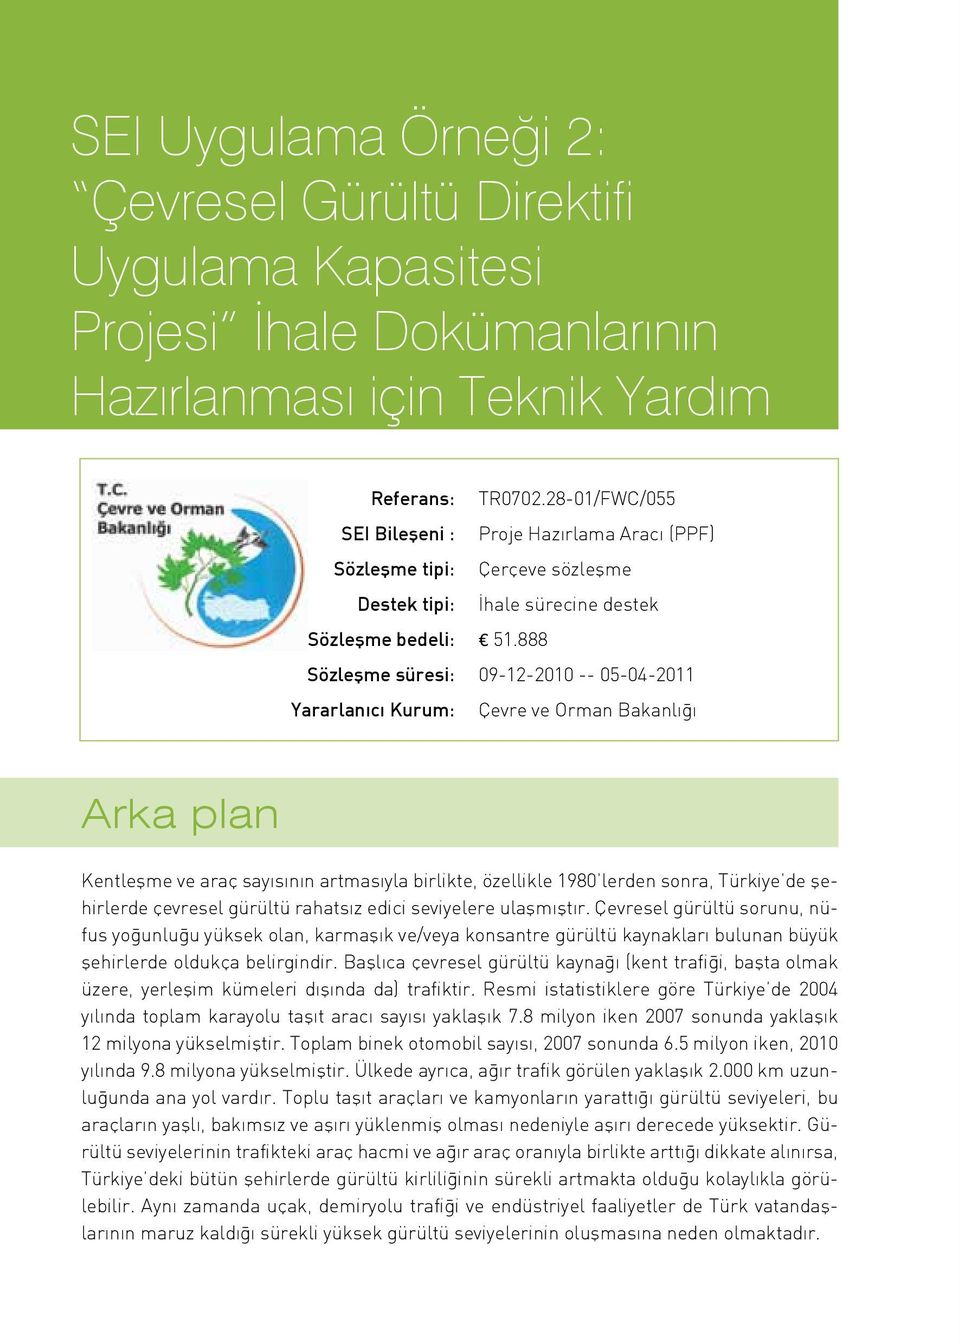 888 süresi: 09-12-2010 -- 05-04-2011 Yararlanıcı Kurum: Çevre ve Orman Bakanlığı Arka plan Kentleşme ve araç sayısının artmasıyla birlikte, özellikle 1980 lerden sonra, Türkiye de şehirlerde çevresel